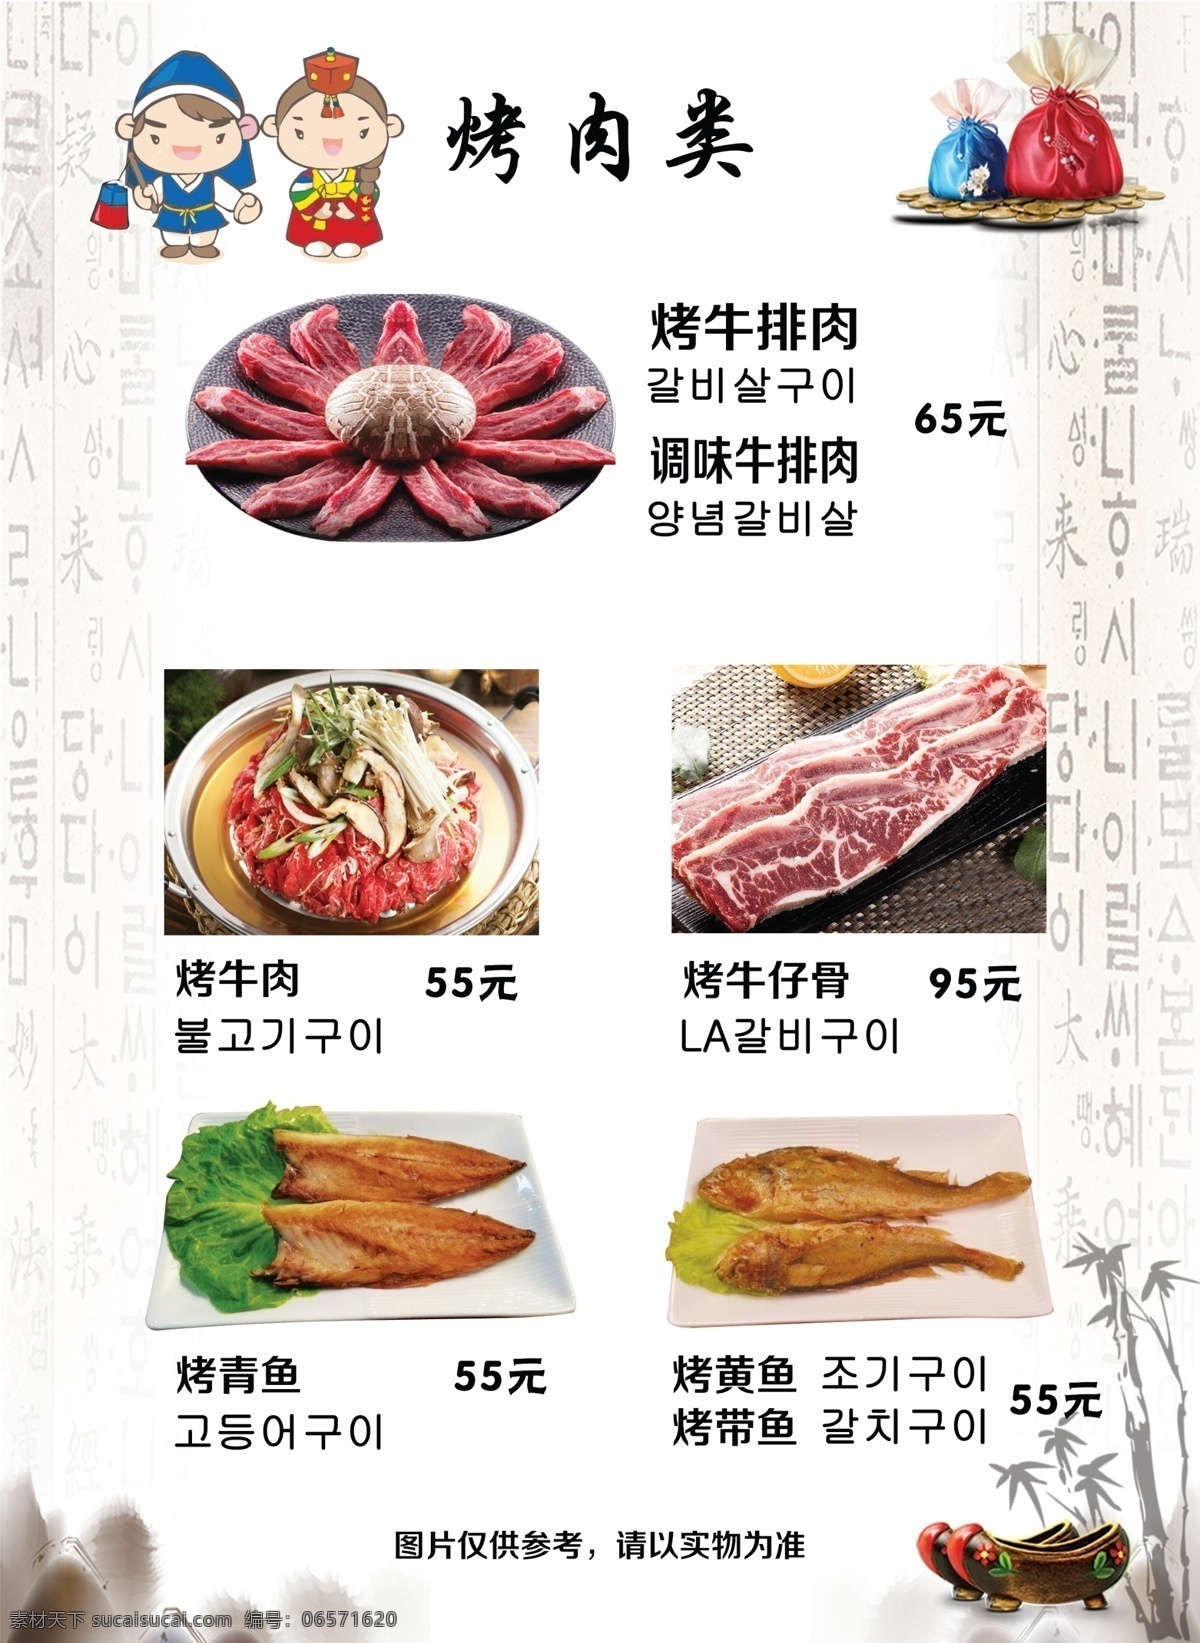 韩式 烤肉 料理 图分层 烤牛排肉 烤牛肉 牛仔骨 青鱼 黄鱼 带鱼 菜单菜谱